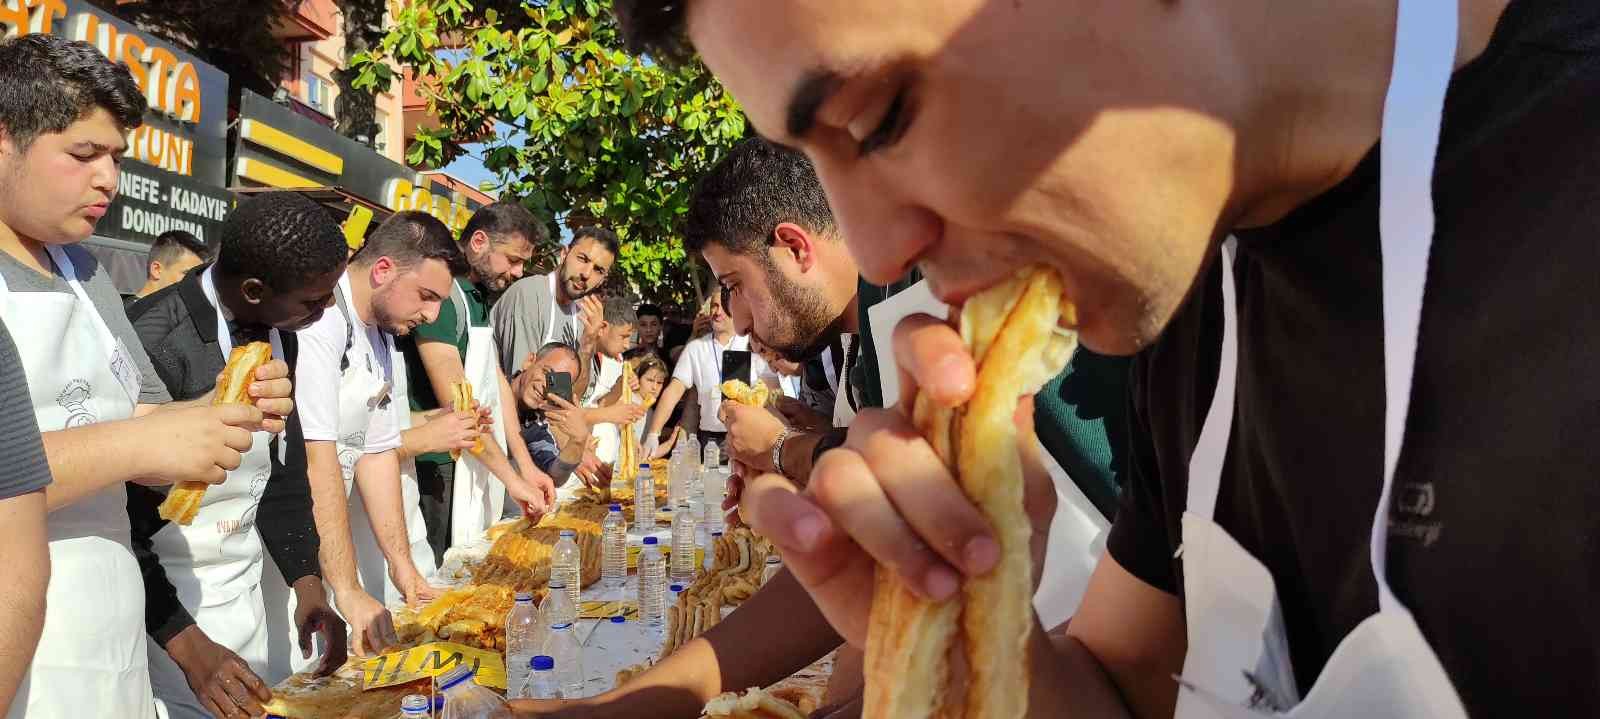 Bursa’da düzenlenen 3 bin lira ödüllü börek yeme yarışmasında yarışmacılar ödülü kazanmak için kıyasıya yarıştı. Birincinin 10 dakika içinde 15 ...